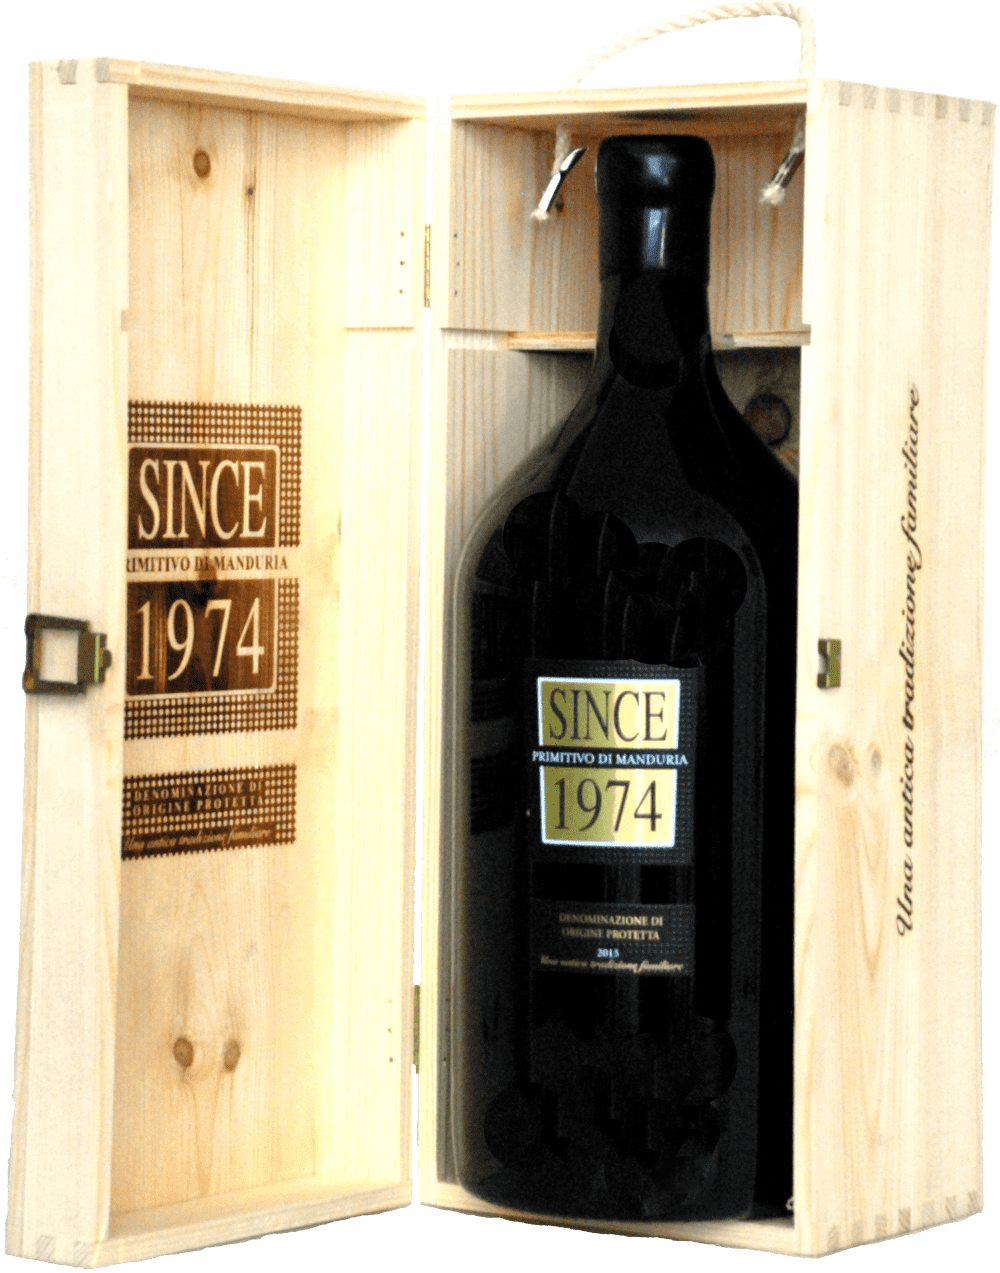 Raudonas sausas vynas SINCE 1974 PRIMITIVO DI MANDURIA D.O.P. DOUBLE MAGNUM.